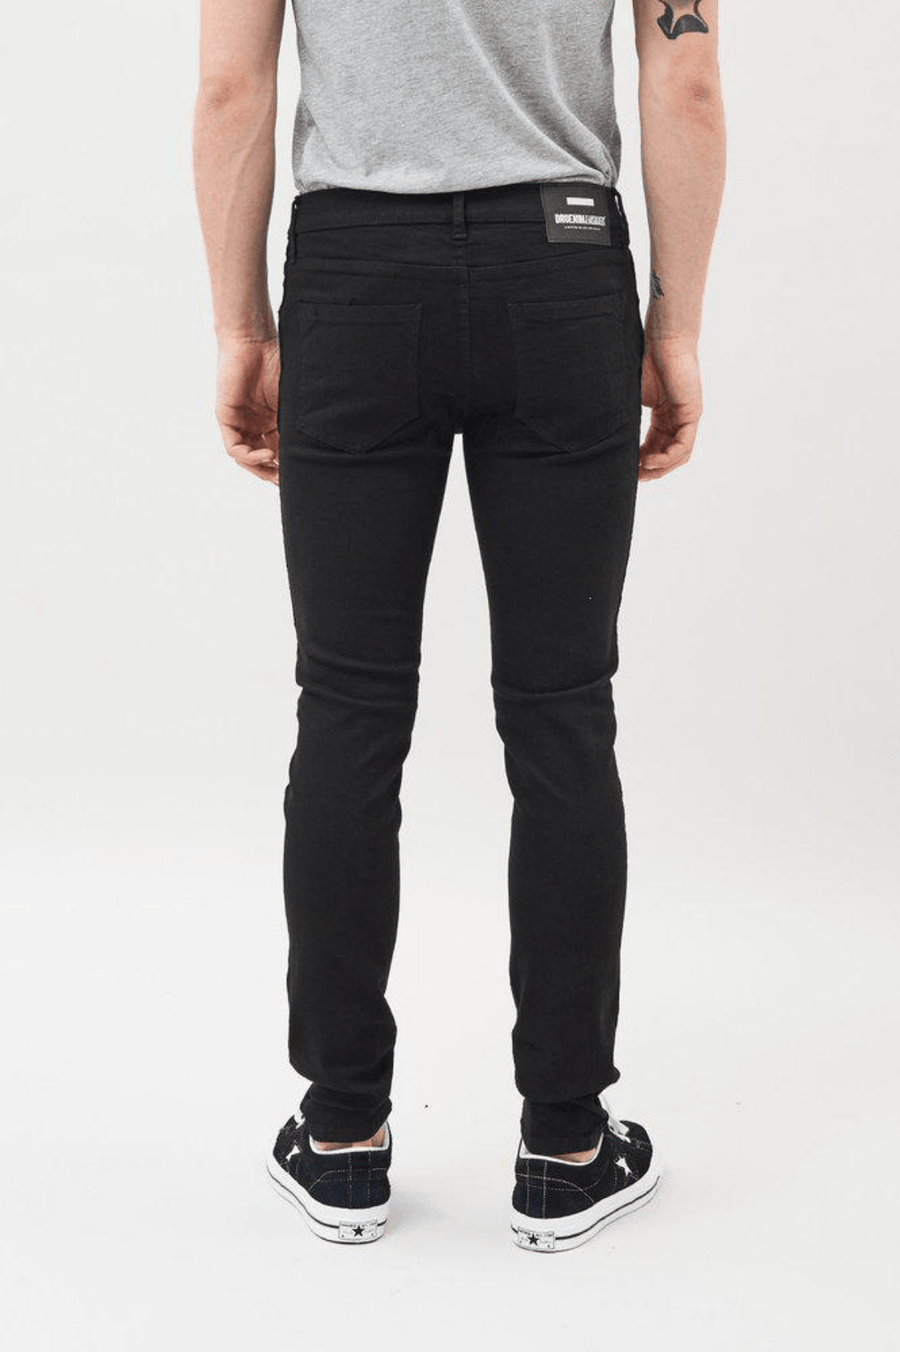 Snap Jeans Black - Dr Denim Jeans - Australia & NZ